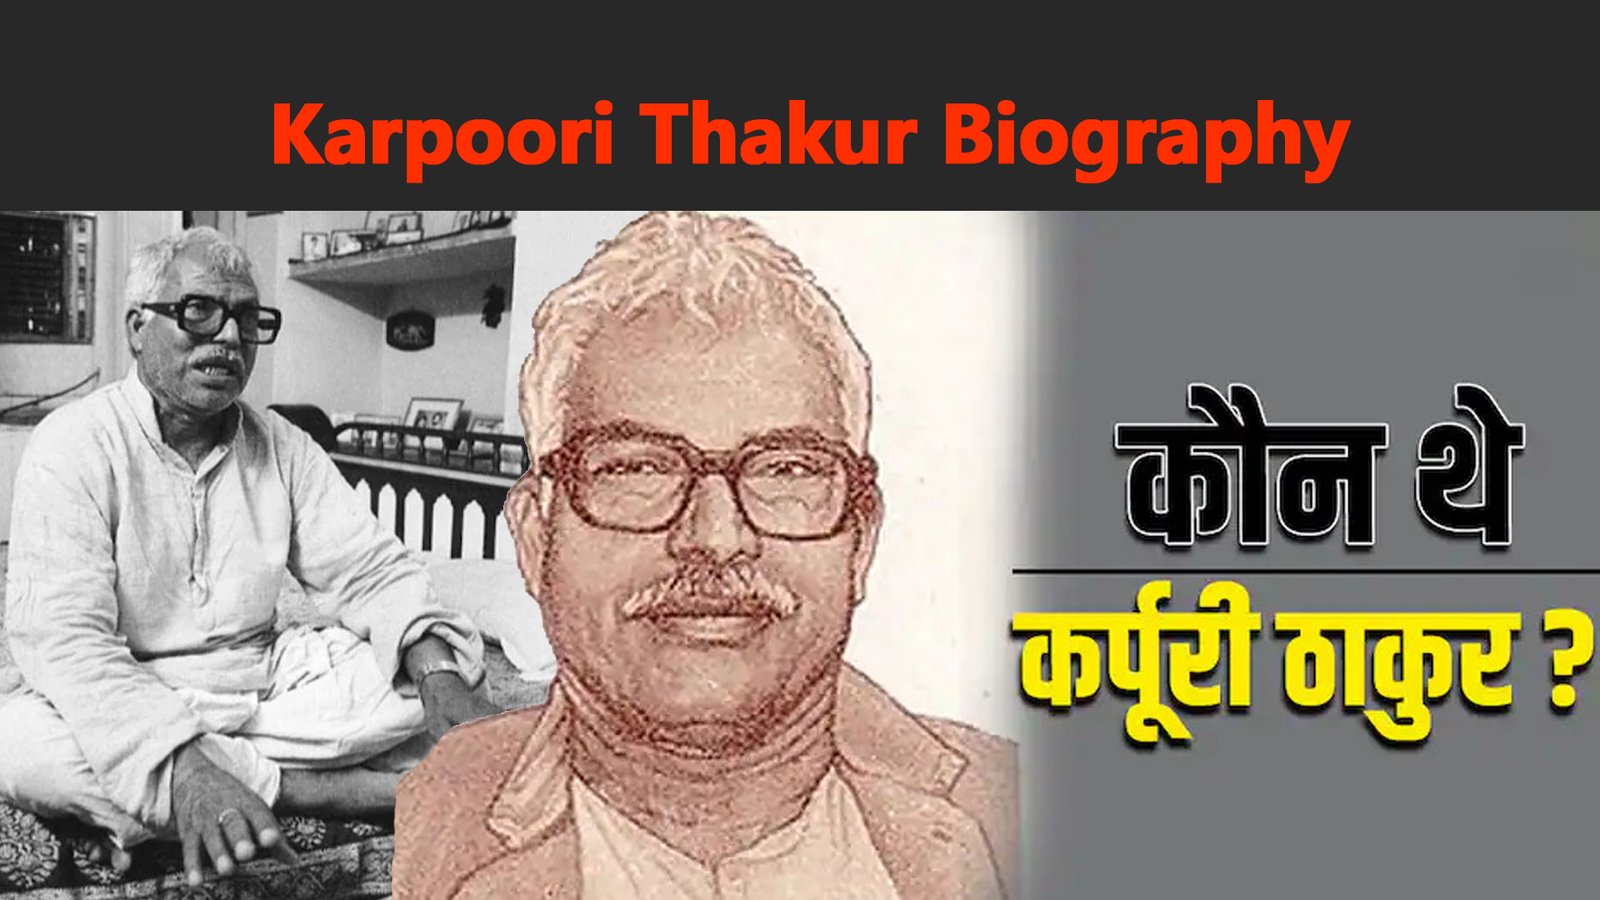 Karpoori Thakur Biography